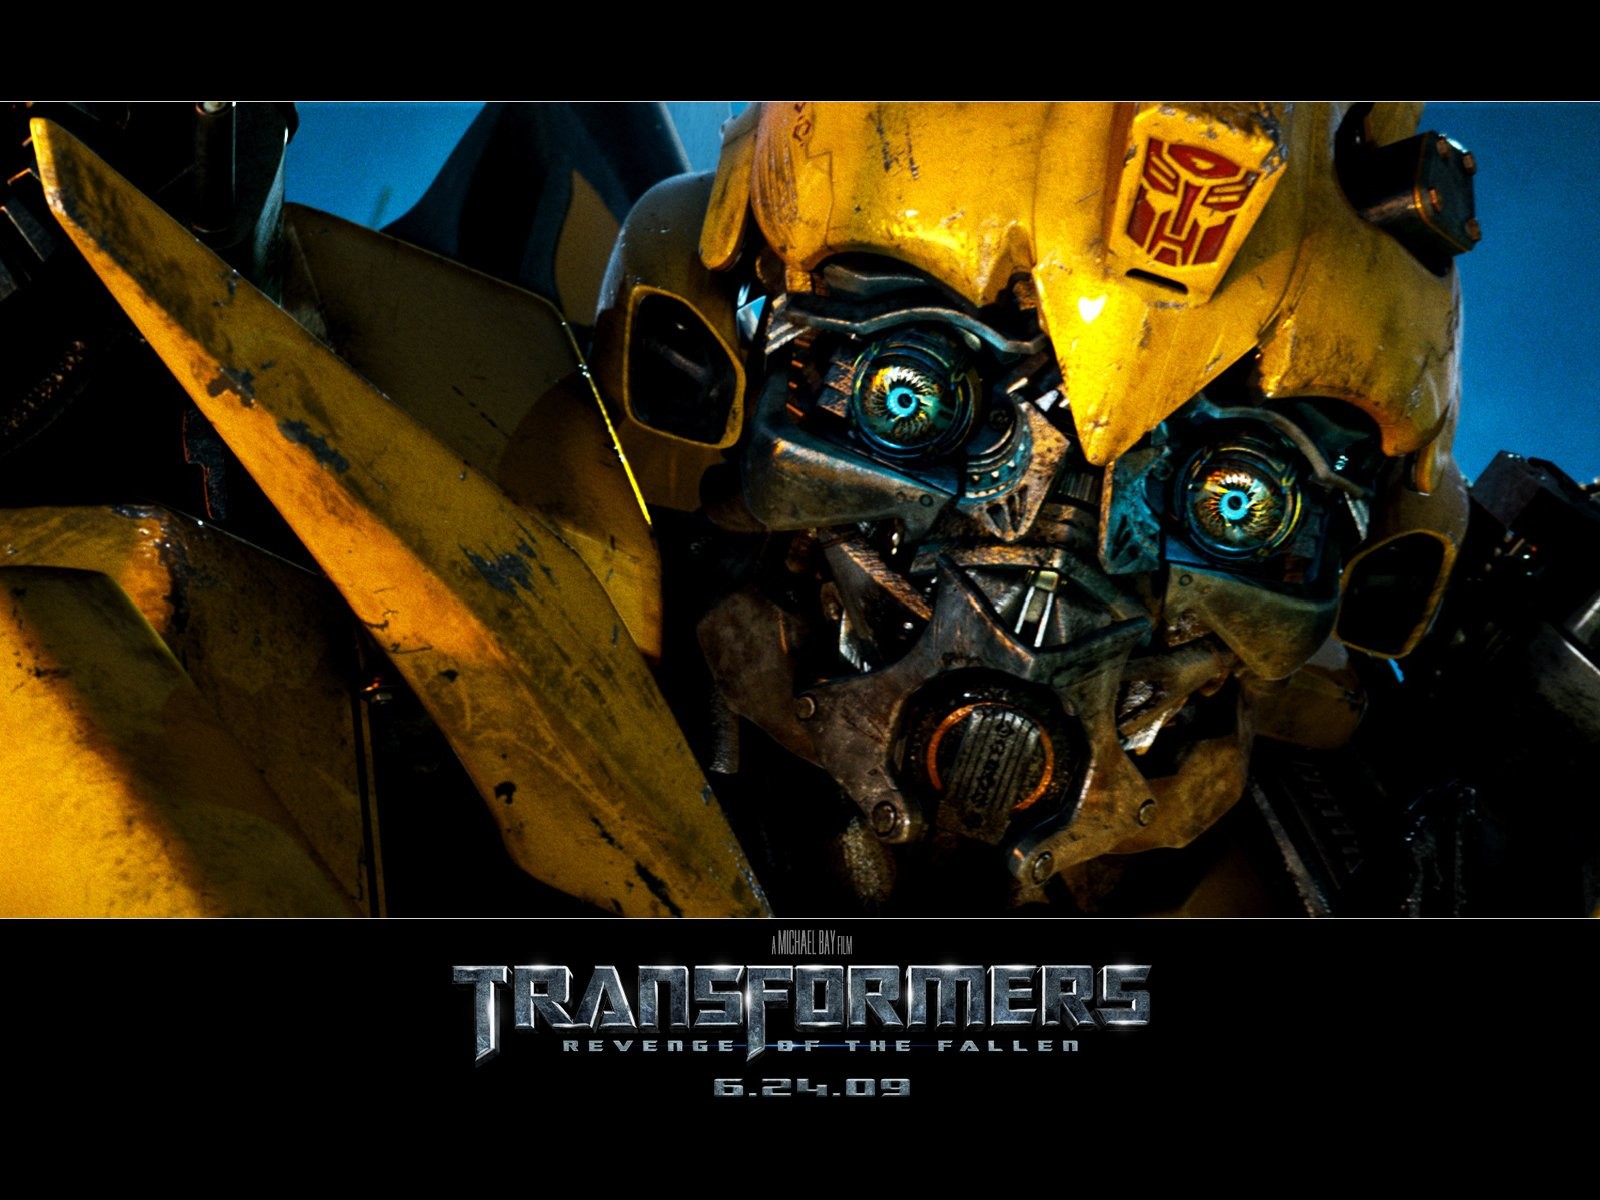 Transformers HD papel tapiz #7 - 1600x1200